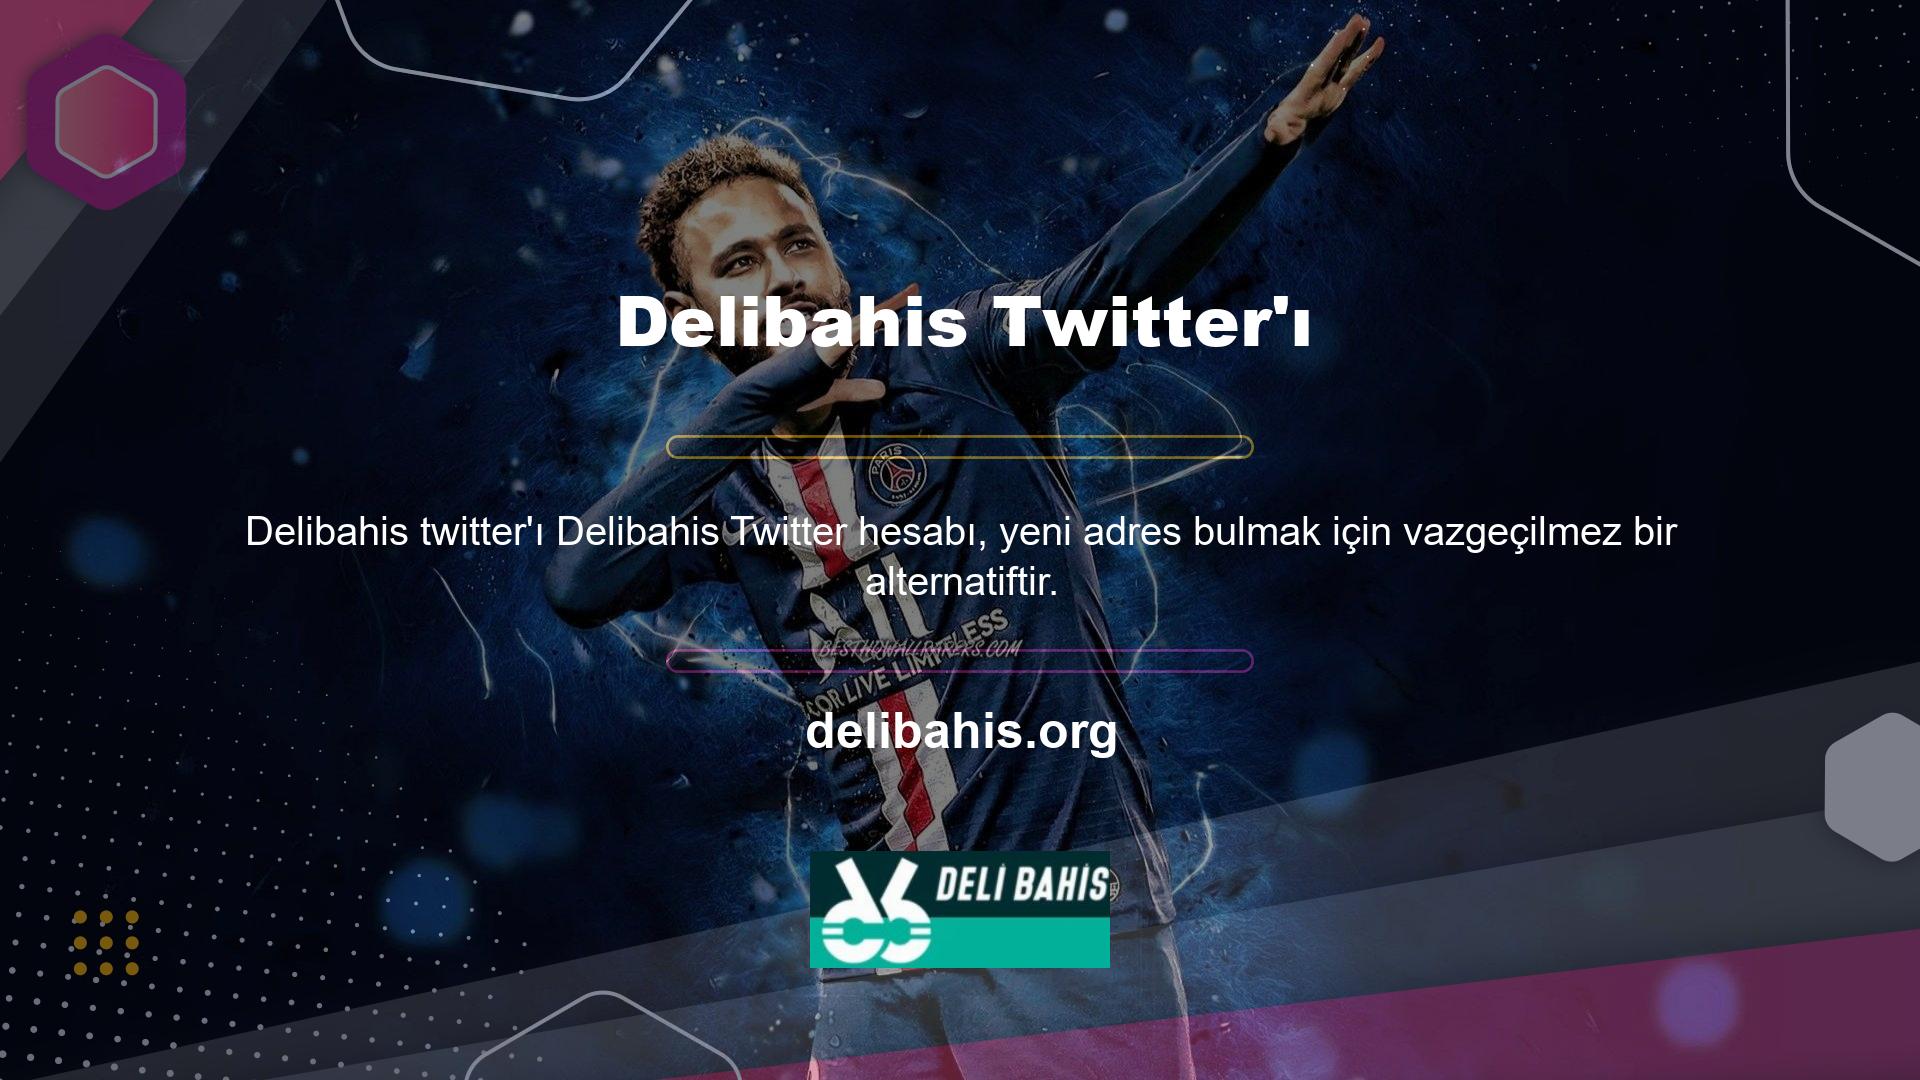 Daha iyiler, Delibahis bahis sitesi hakkında her şeyi Twitter hesapları aracılığıyla öğrenebilirler